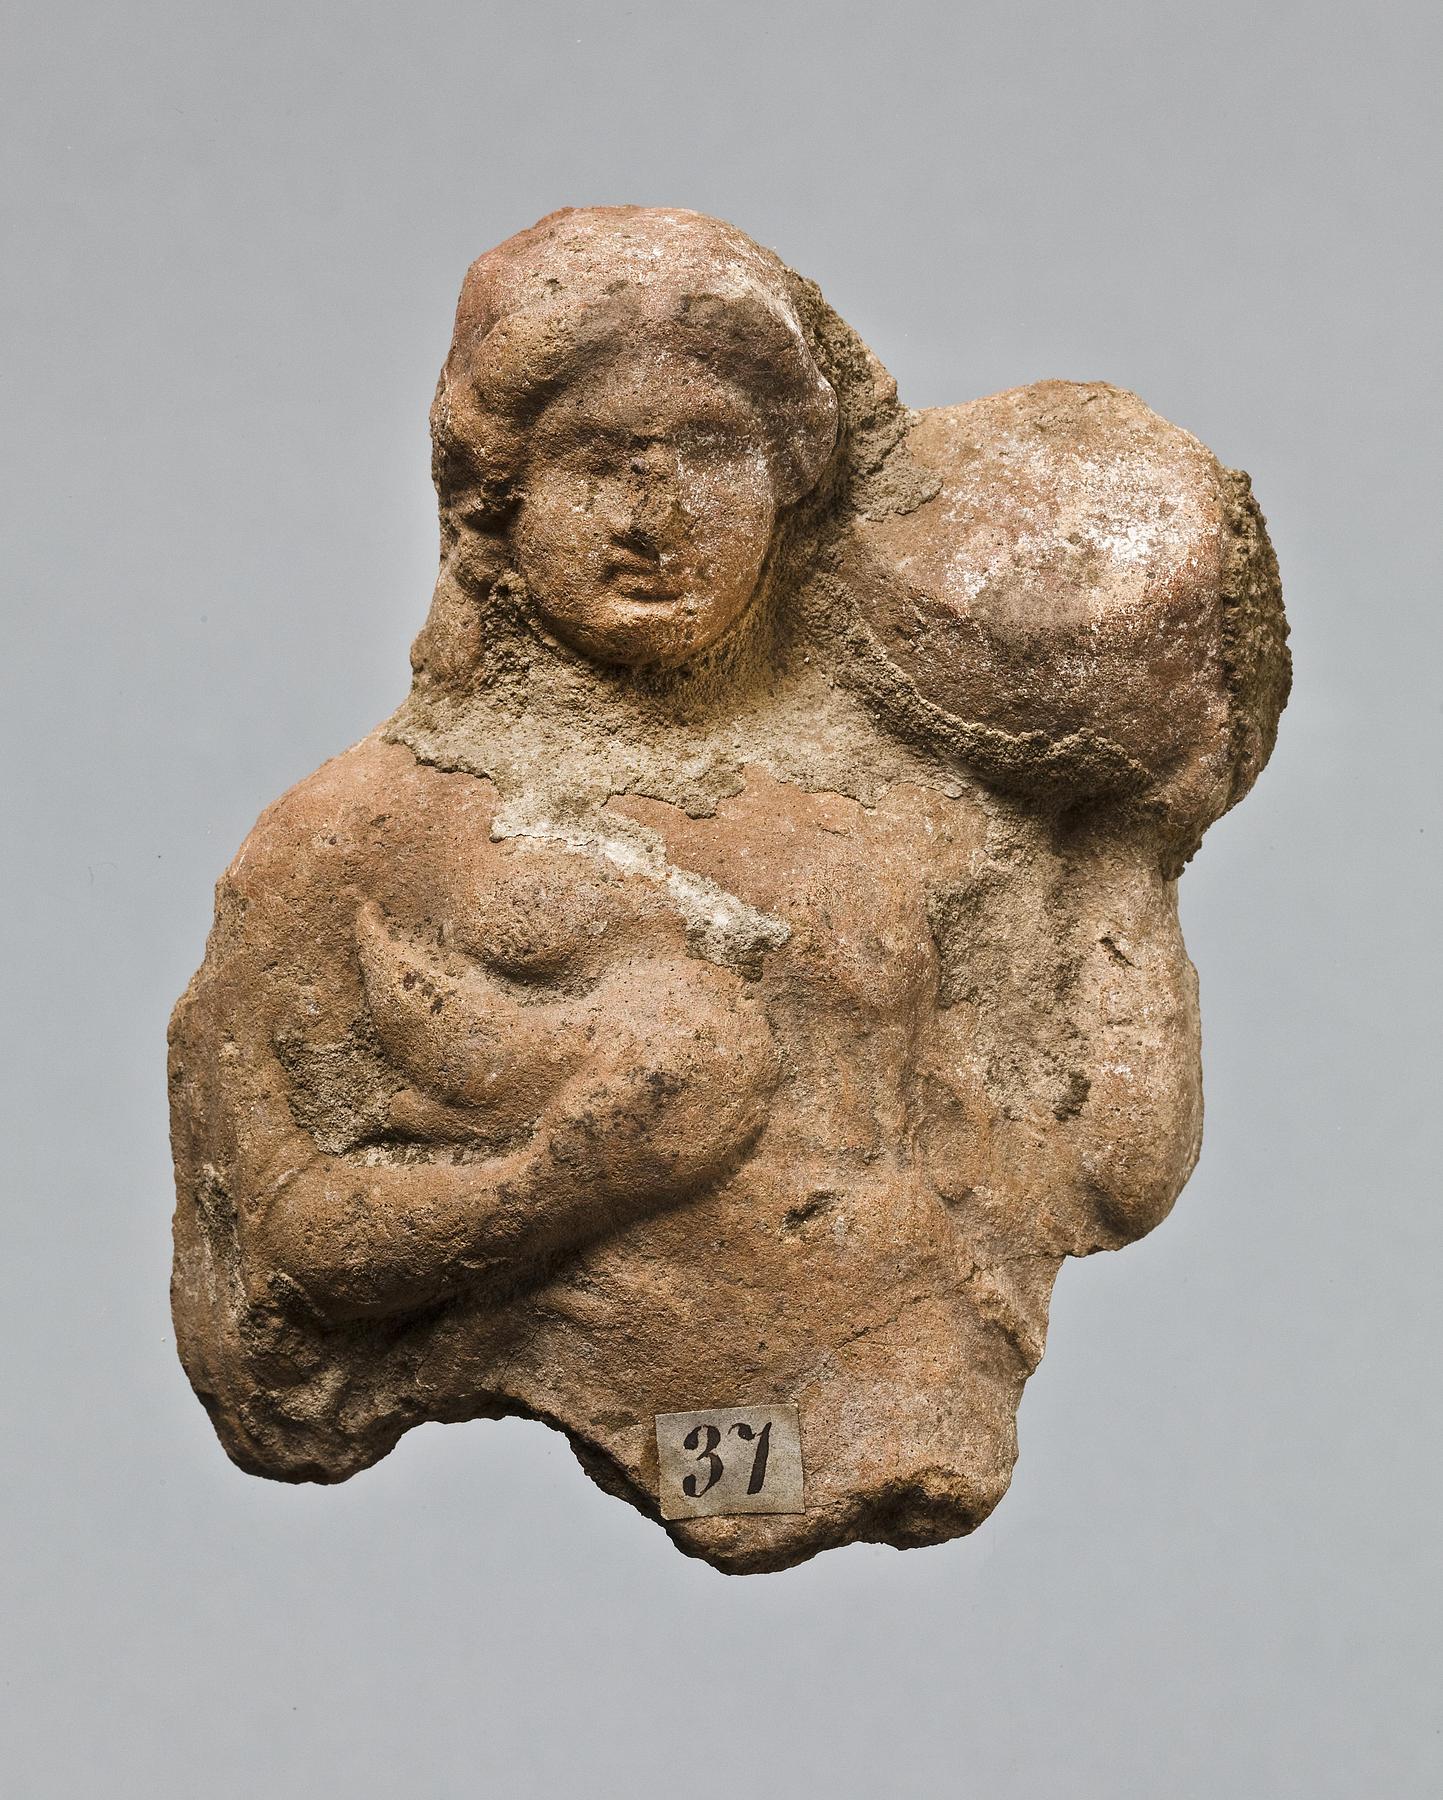 Statuette af en kvinde med en gris og en cista mystica, H1037